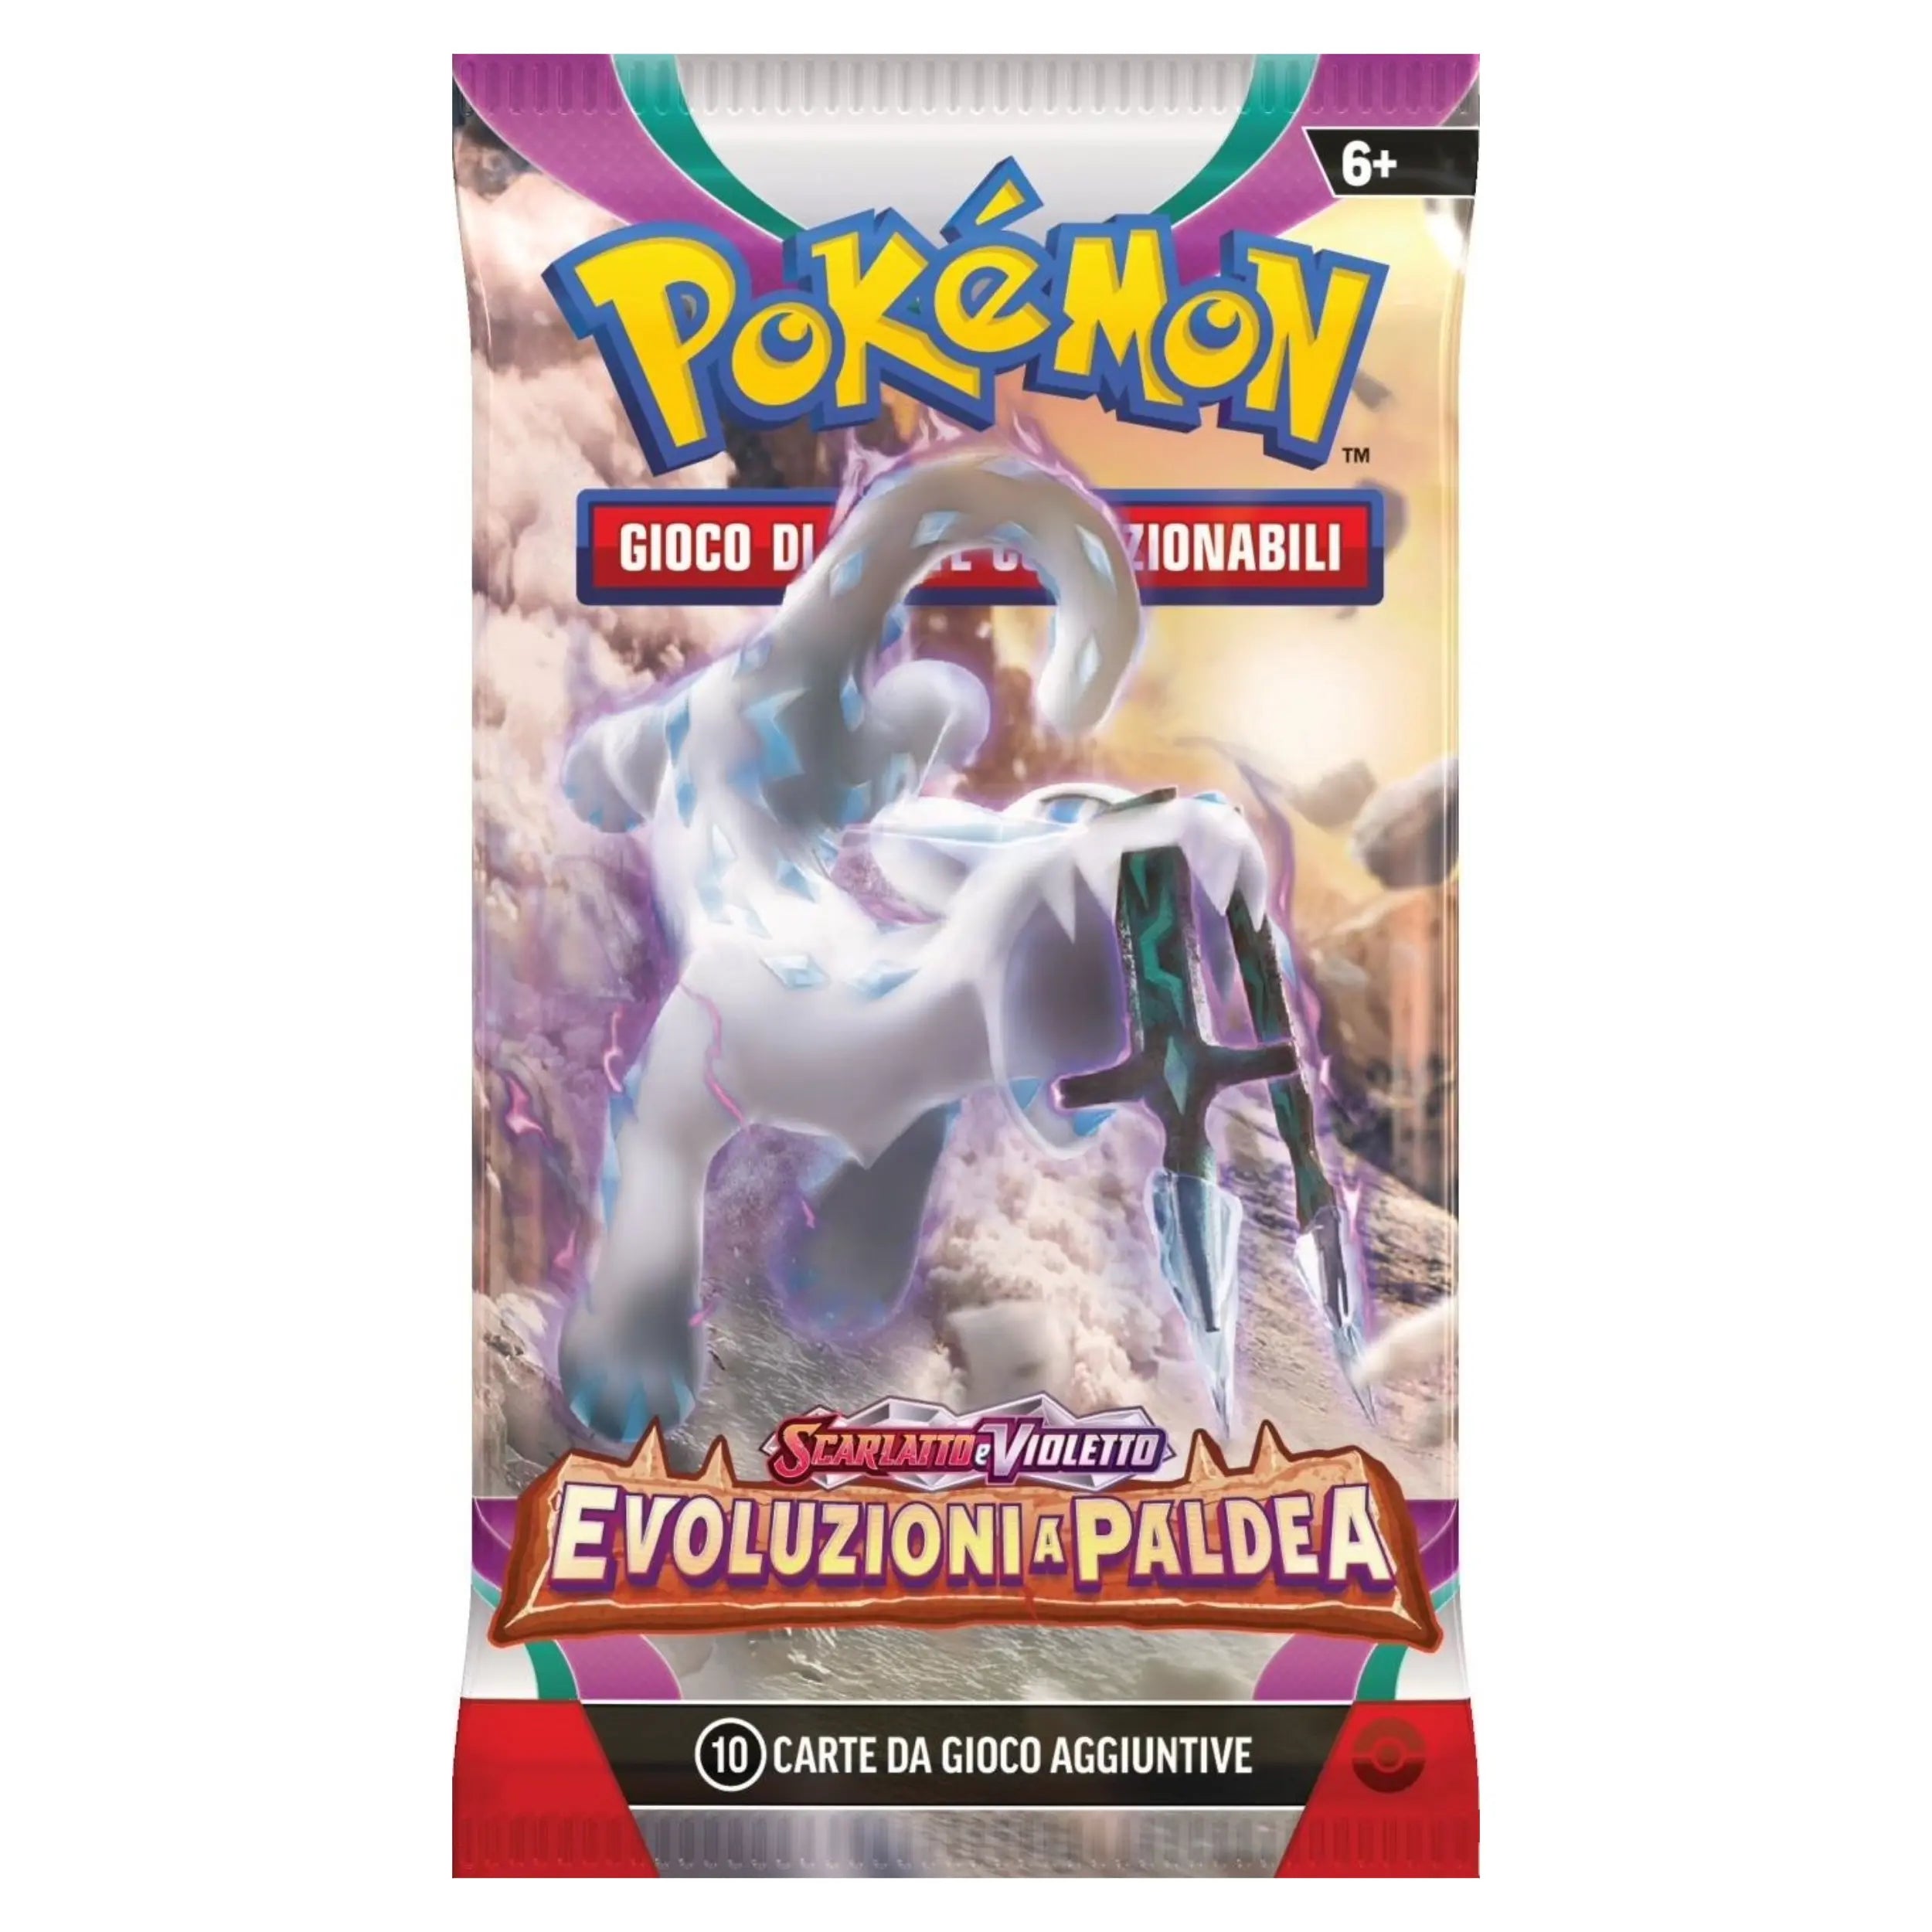 Game Vision - Pokemon Scarlatto e Violetto Evoluzioni A Paldea